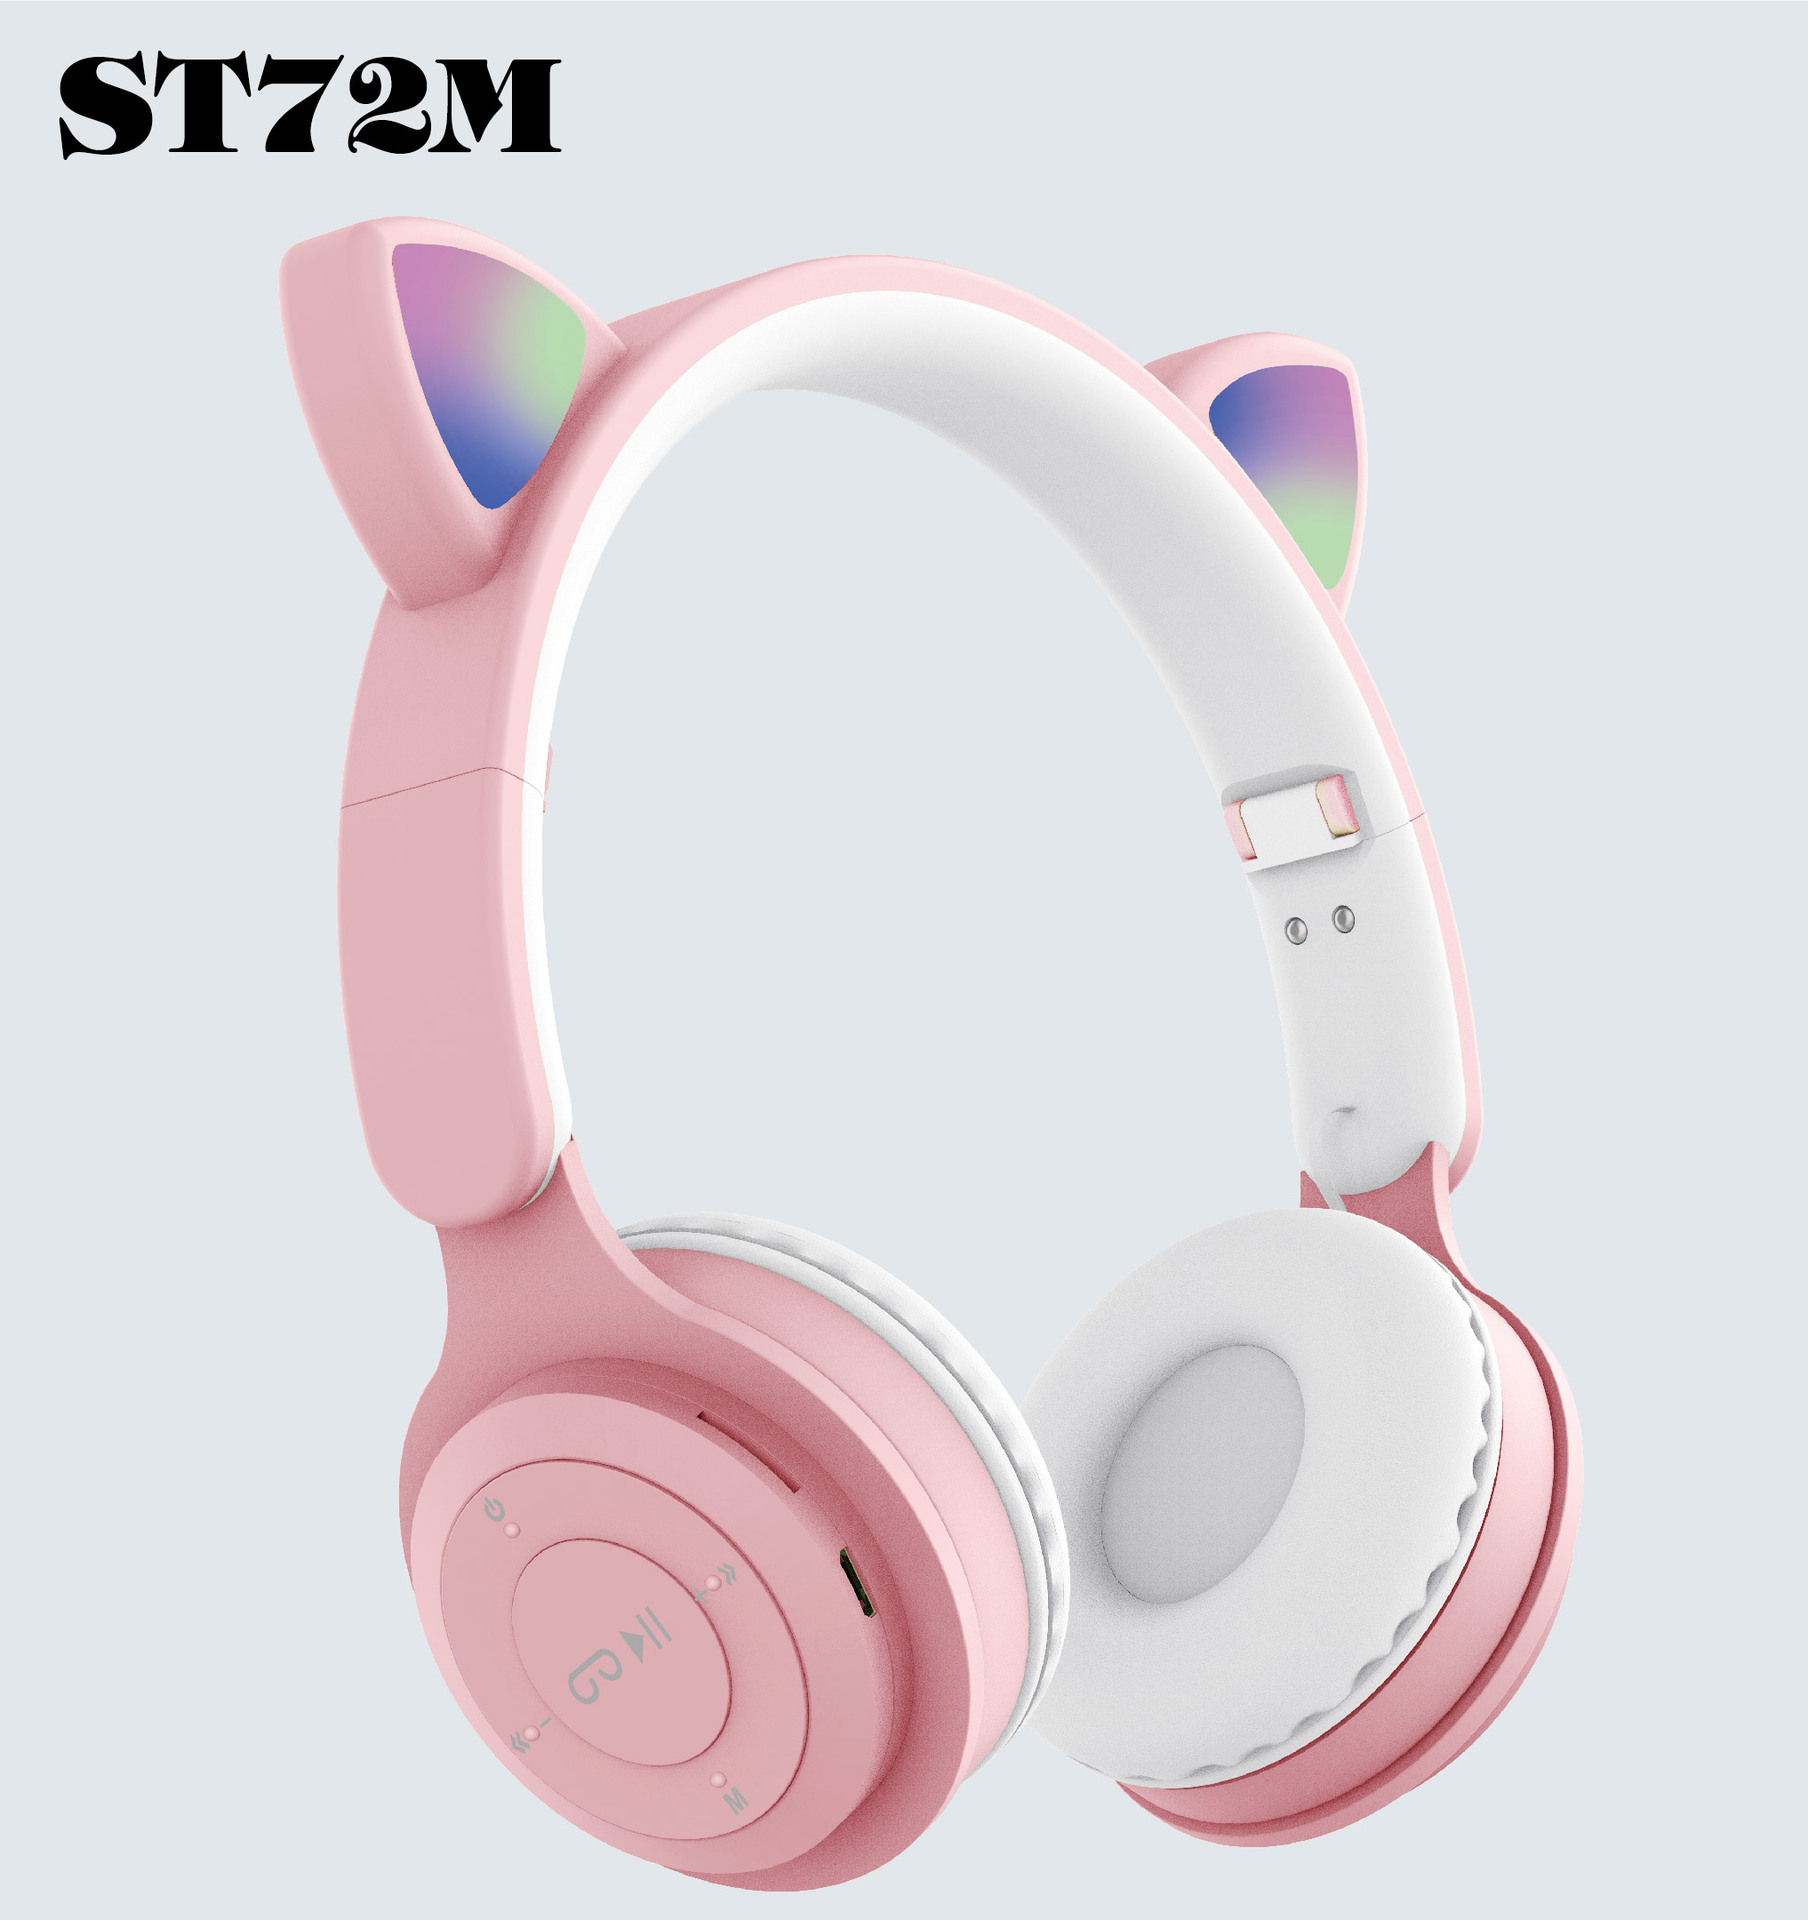 跨境新款头戴式无线蓝牙耳机ST72M 时尚猫耳可折叠插卡FM蓝牙耳机详情1